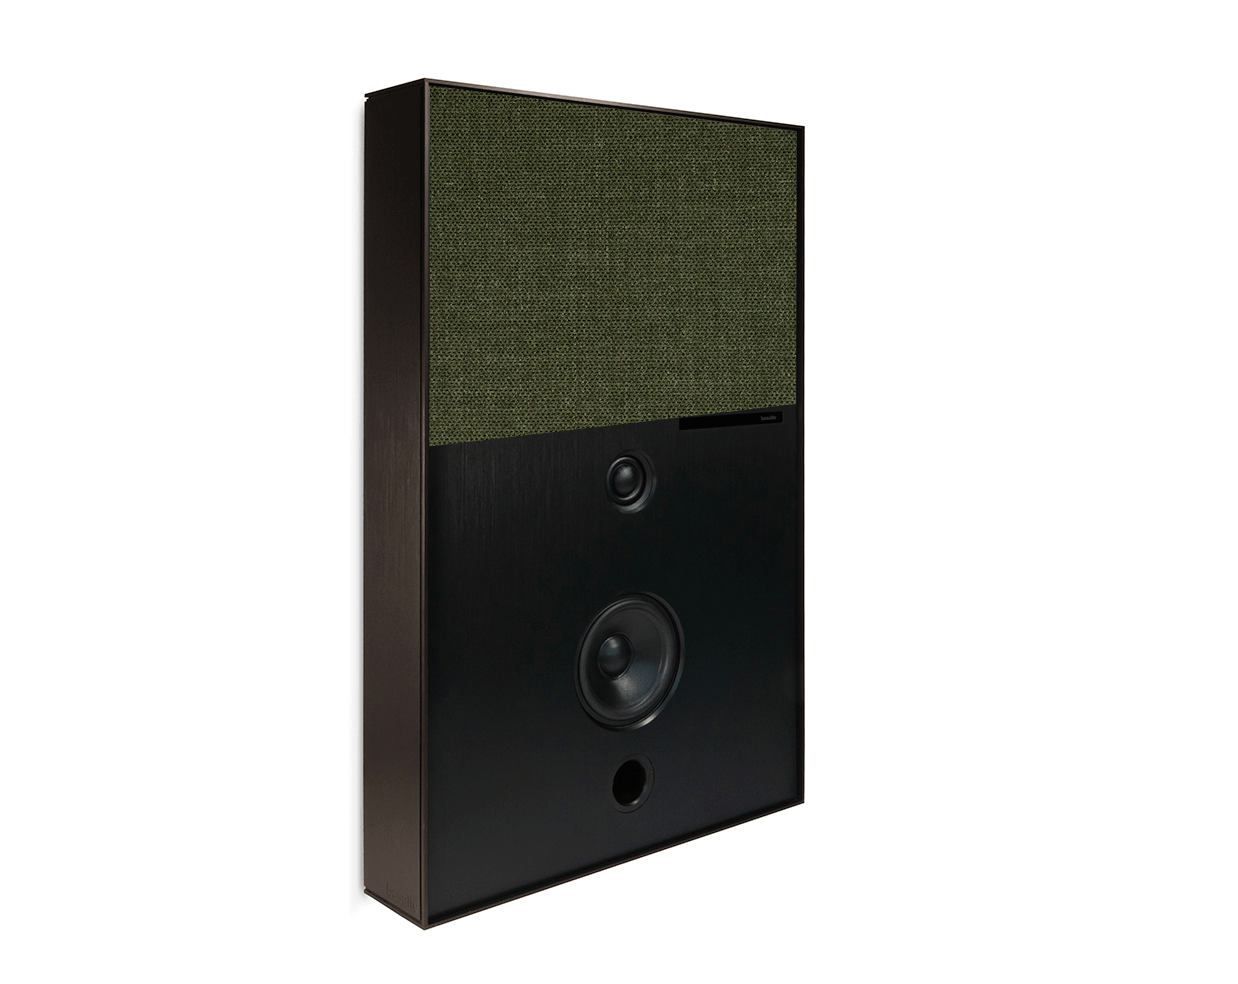 bronze and green aalto d3 active speaker